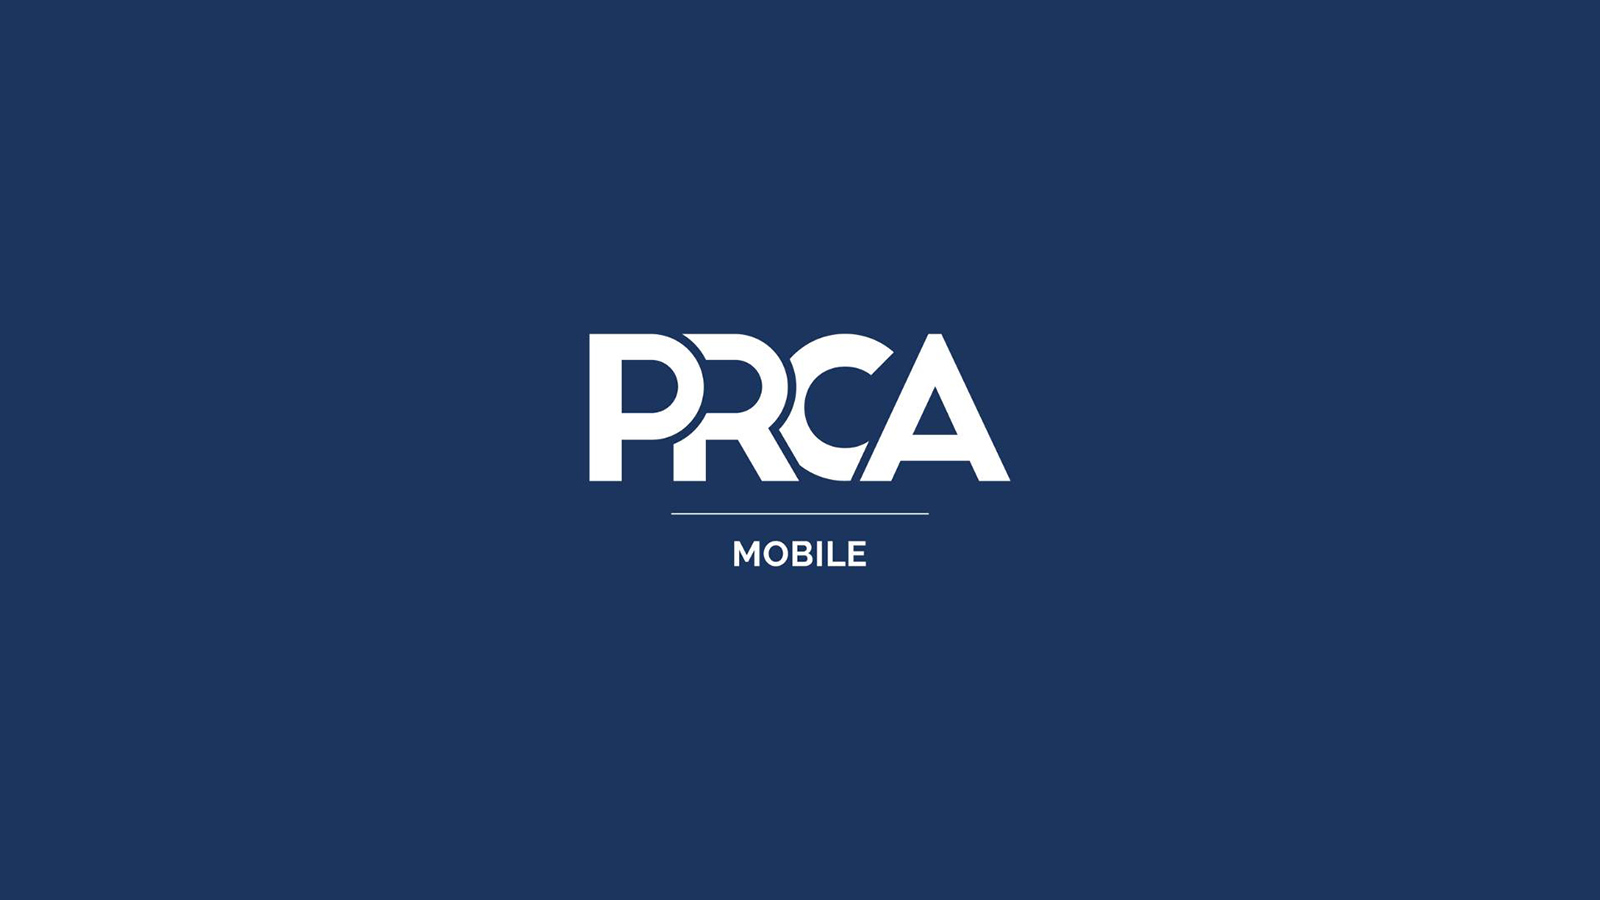 PRCA Mobile 2023 Board Slate Announced